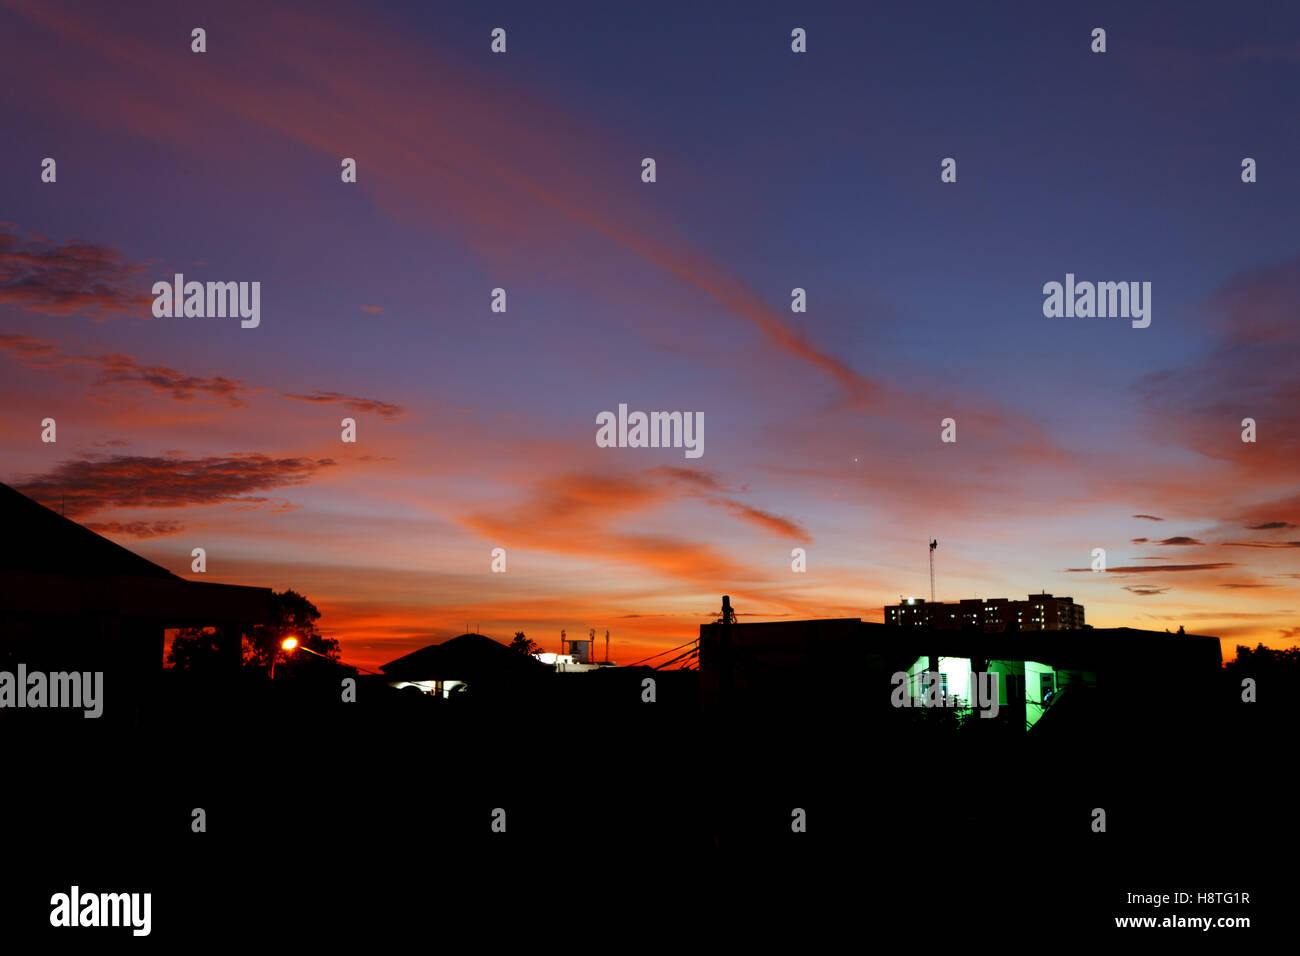 Die rötlichen leuchtenden Wolken am blauen Himmel bei Sonnenuntergang machen sieht die Silhouette des Gebäudes noch schöner. Stockfoto